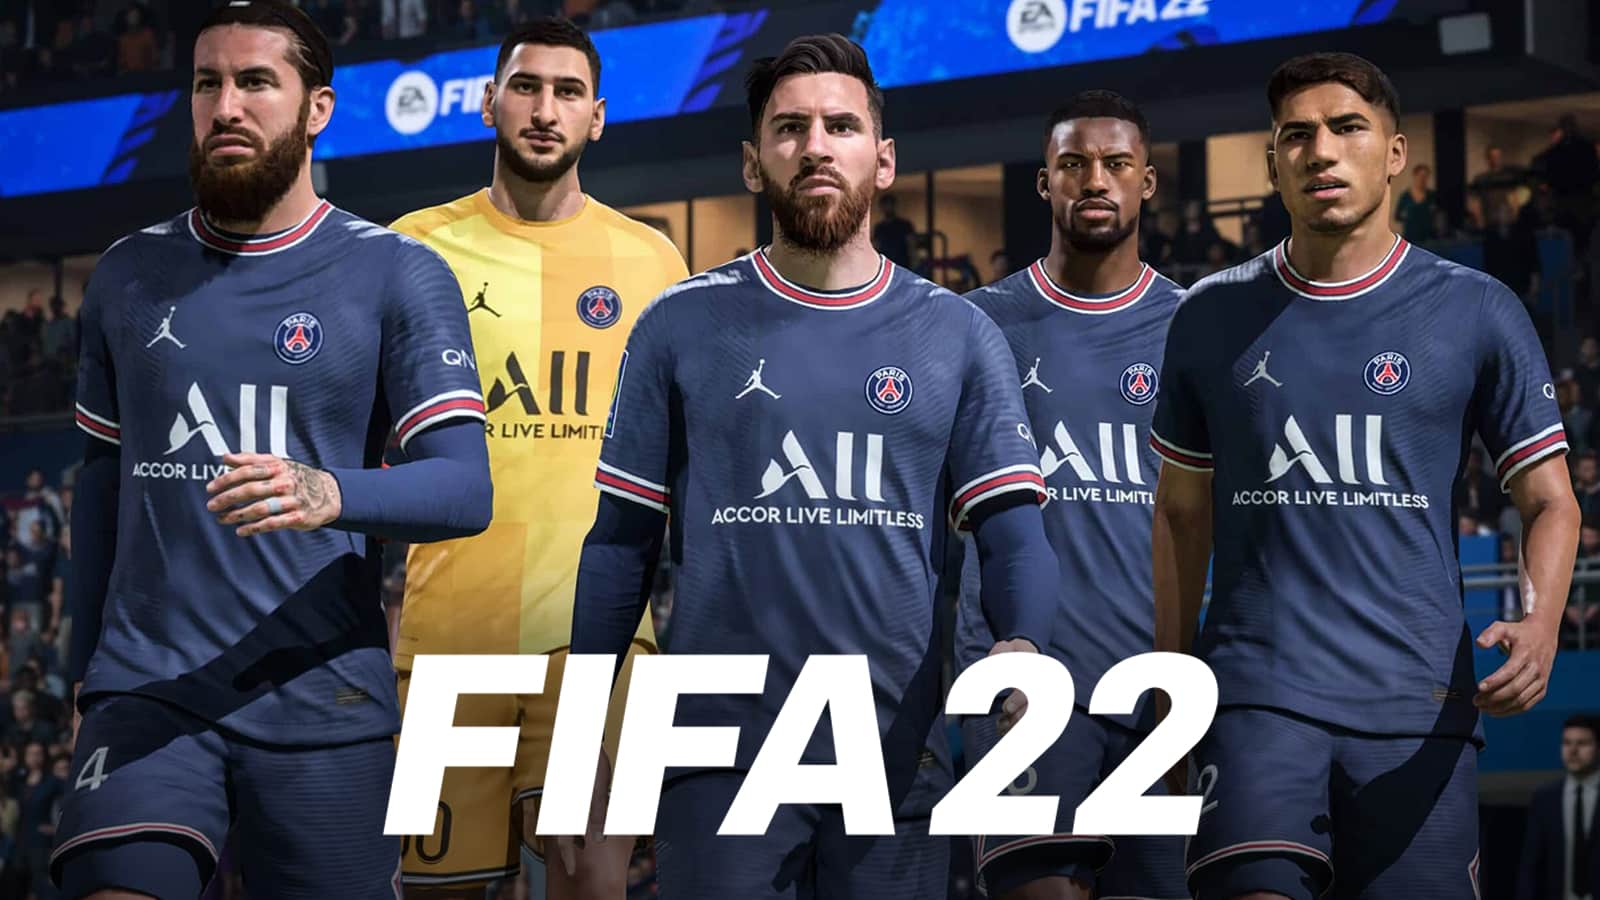 FIFA 22 Teams Online